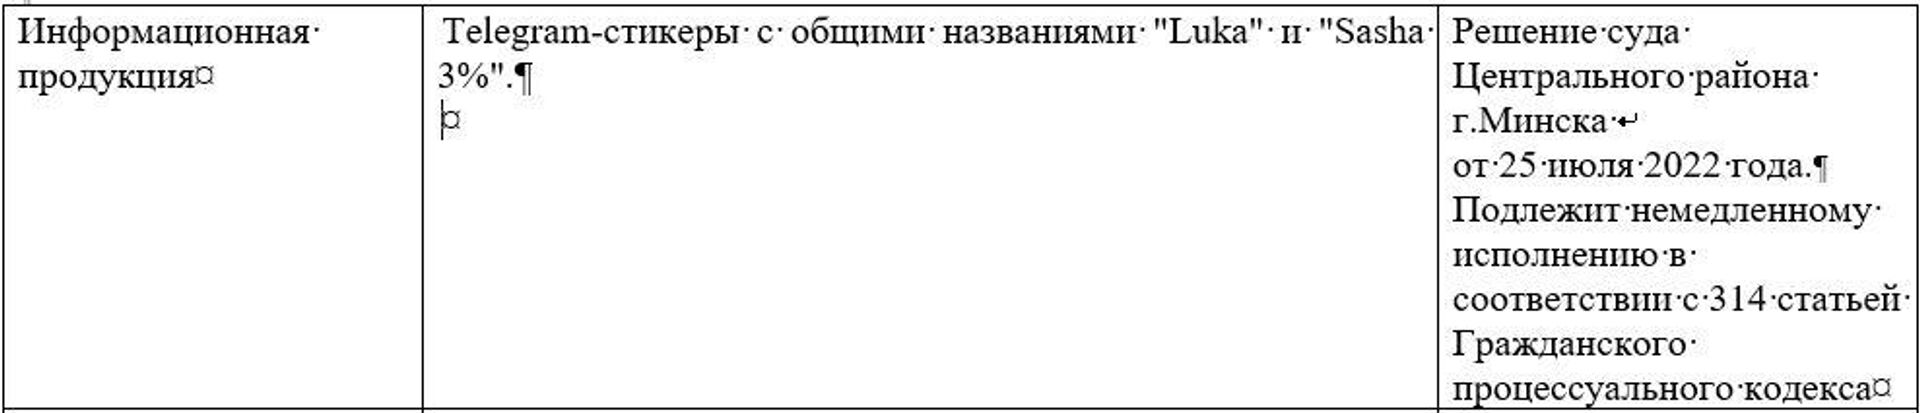 Скриншот из списка экстремистских материалов на сайте Мининформа - Sputnik Беларусь, 1920, 05.08.2022